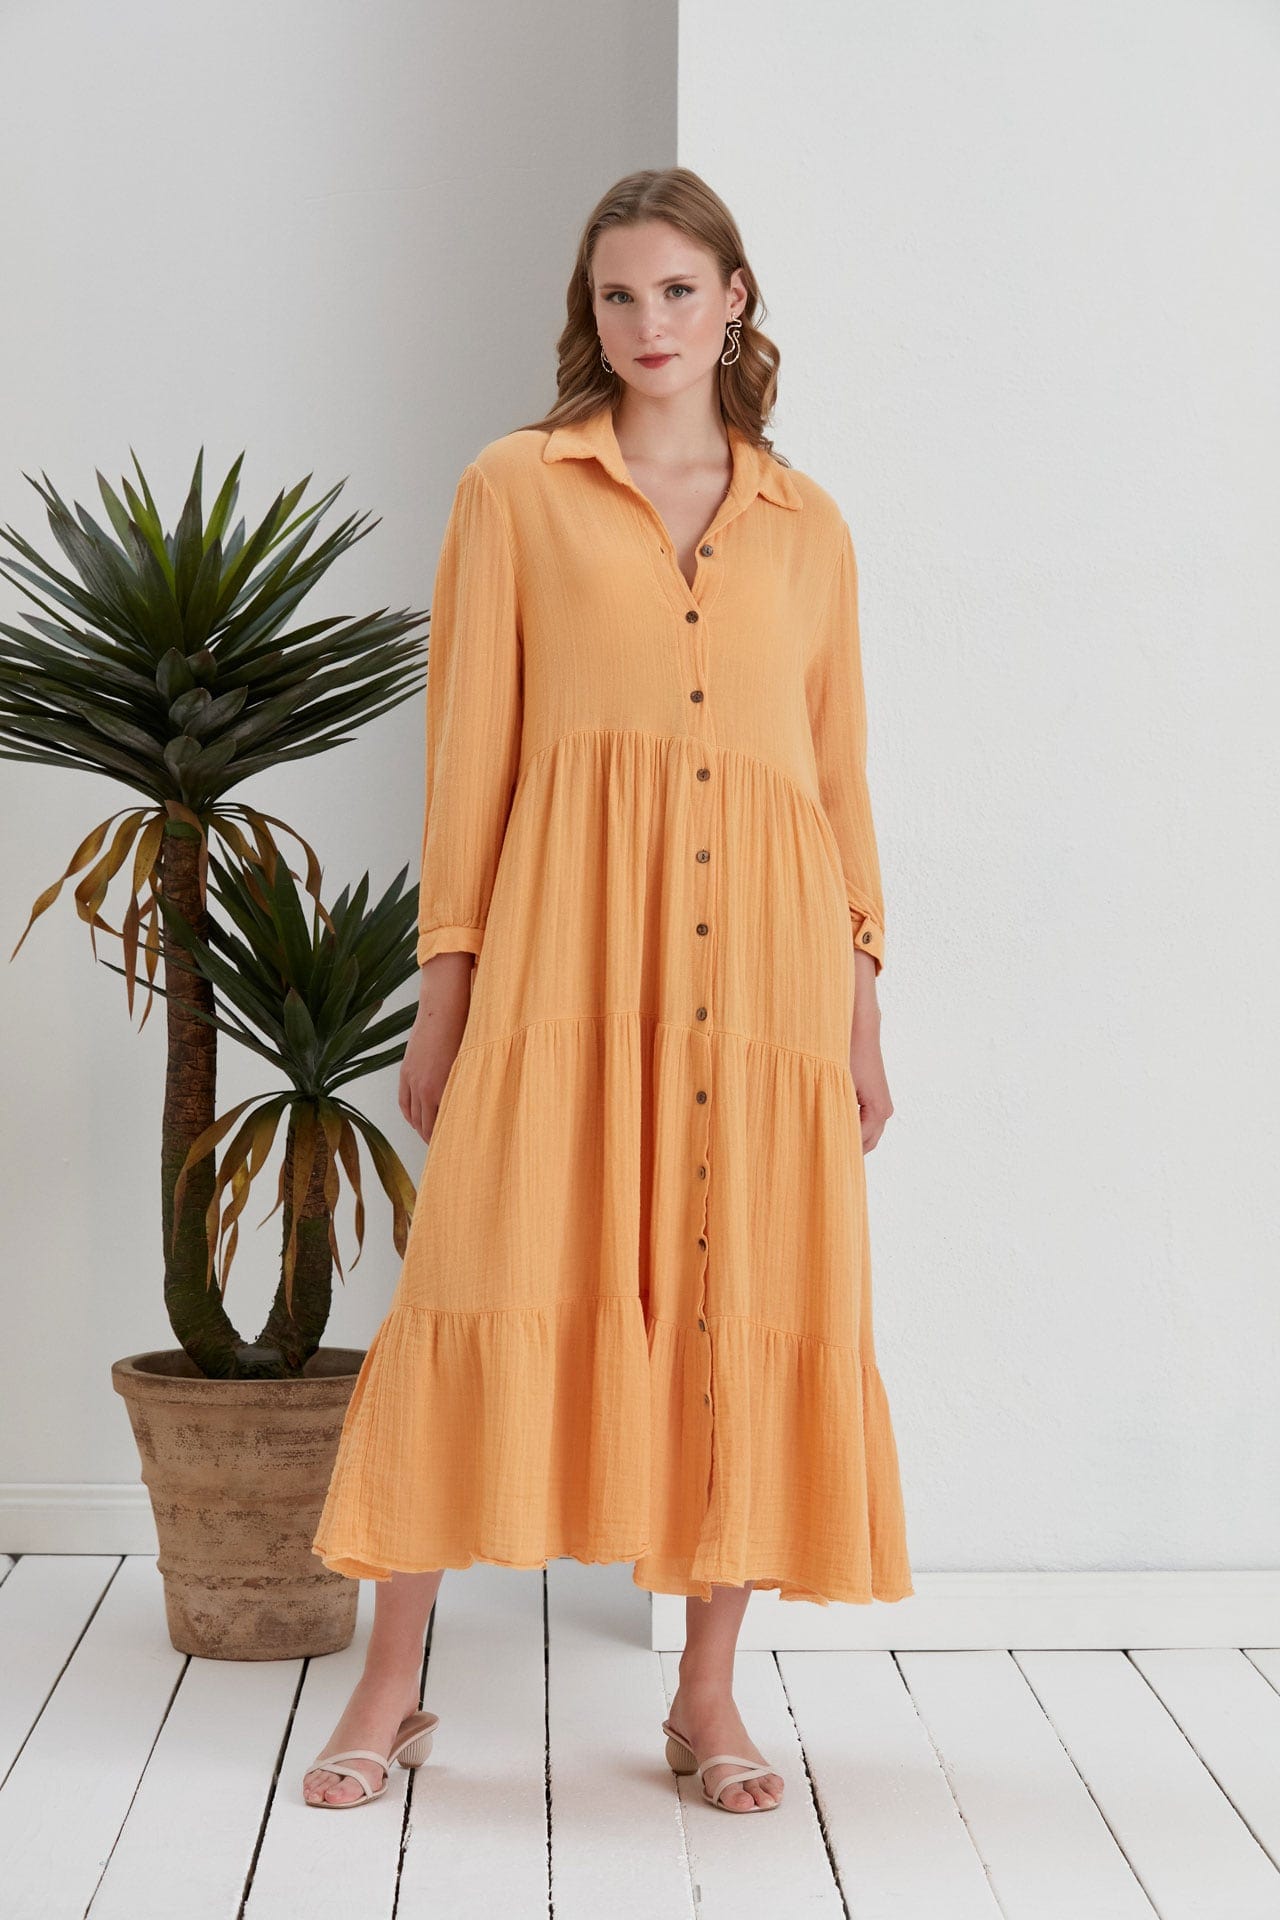 Begonville Uzun Elbise Maya Oversize Uzun Gömlek Elbise - Kayısı Sarısı